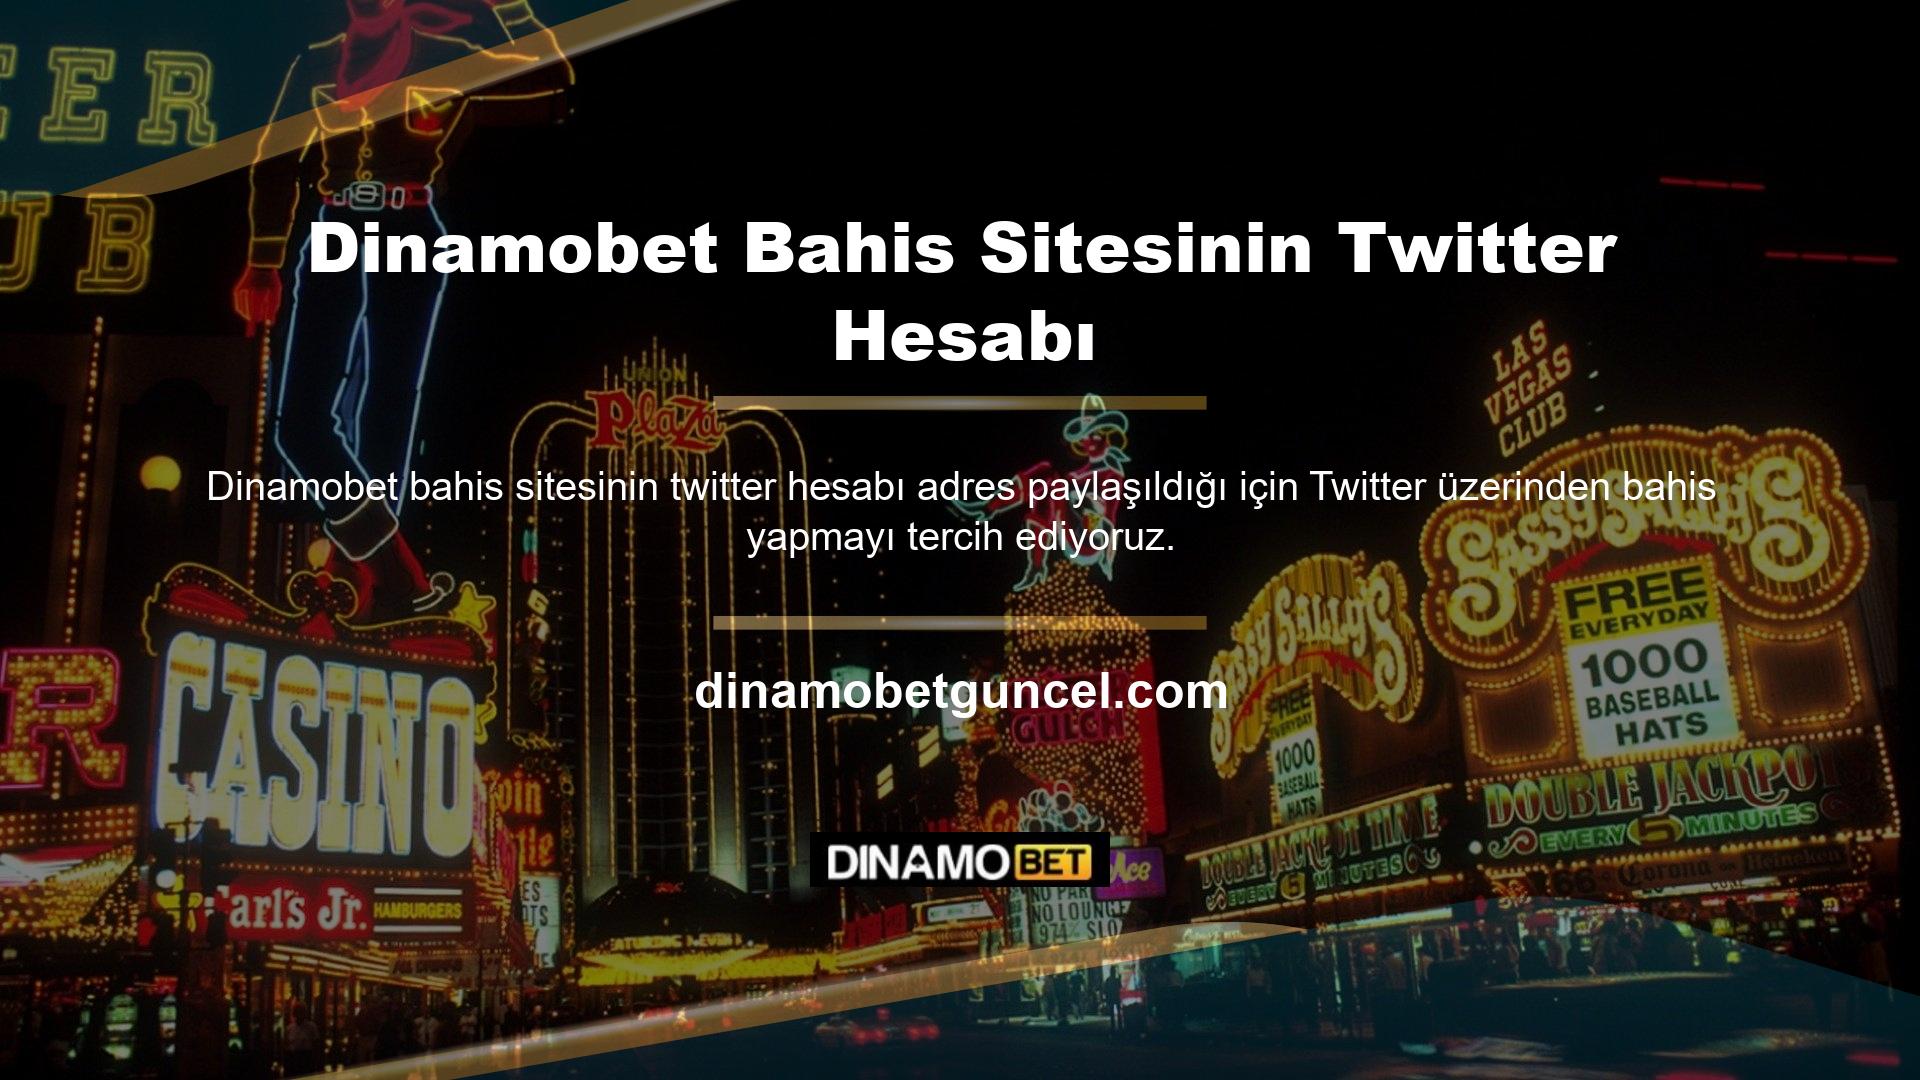 Sosyal medya platformları izlenmekte ve en güncel bahis sitesi olan Dinamobet Twitter adresi verilmektedir